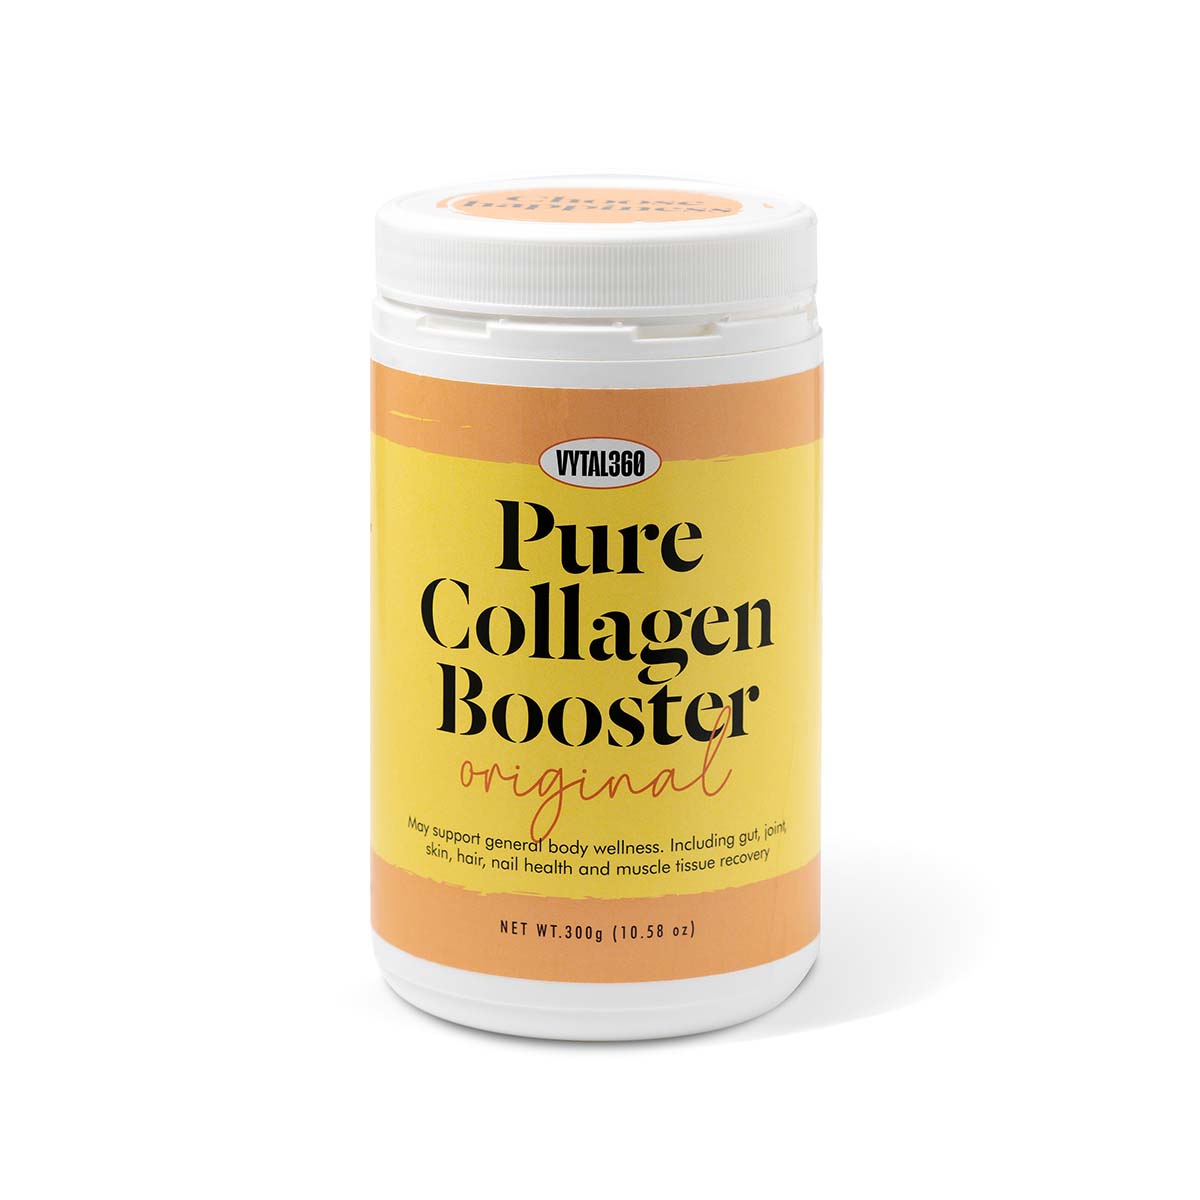 The Best Marine Collagen Powder